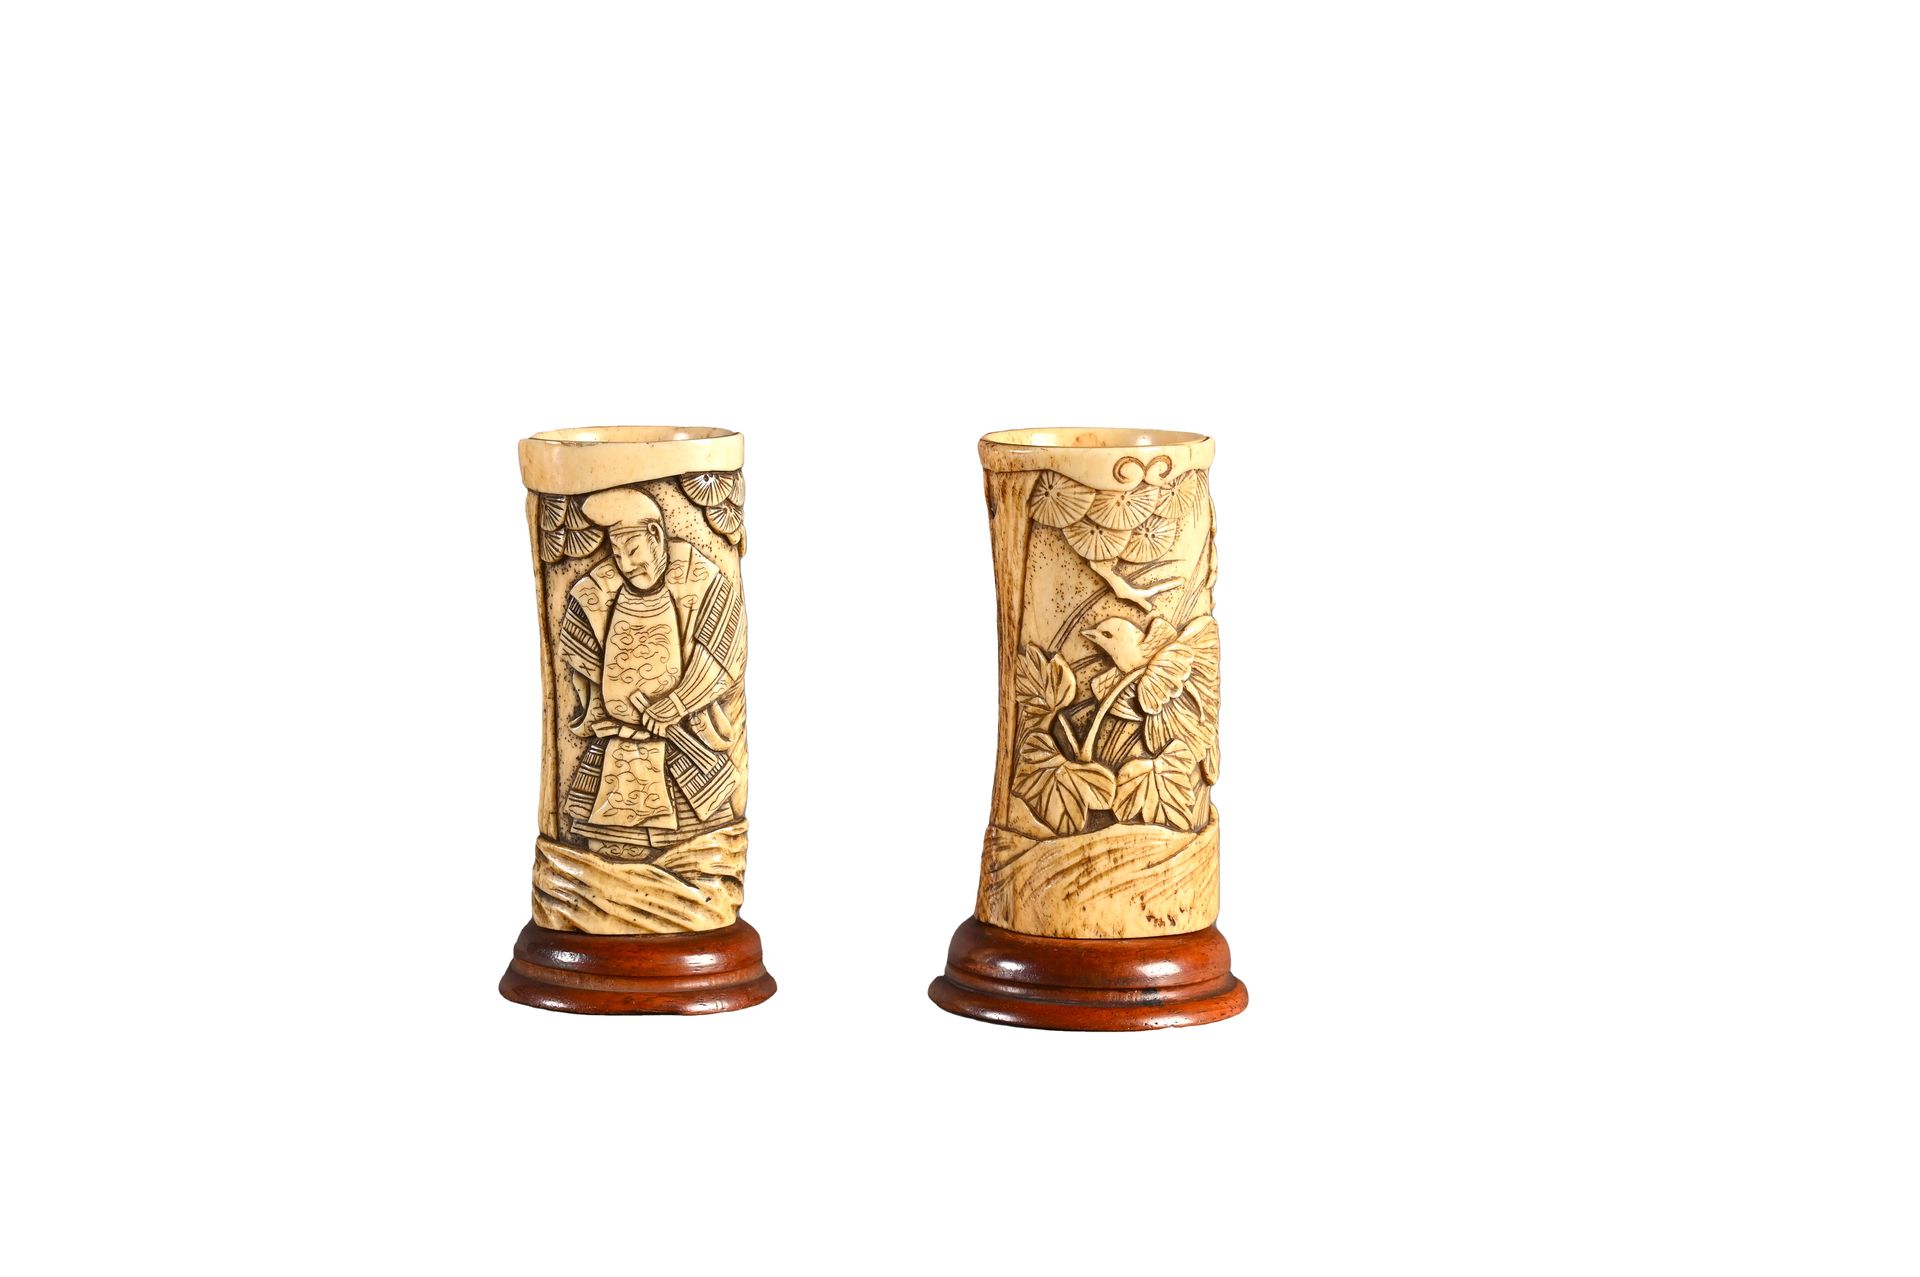 JAPON, époque Meiji 底座上的两个鹿木小刷子壶

一个是武士的装饰，另一个是鸟和蝴蝶的装饰。

H.8厘米AS